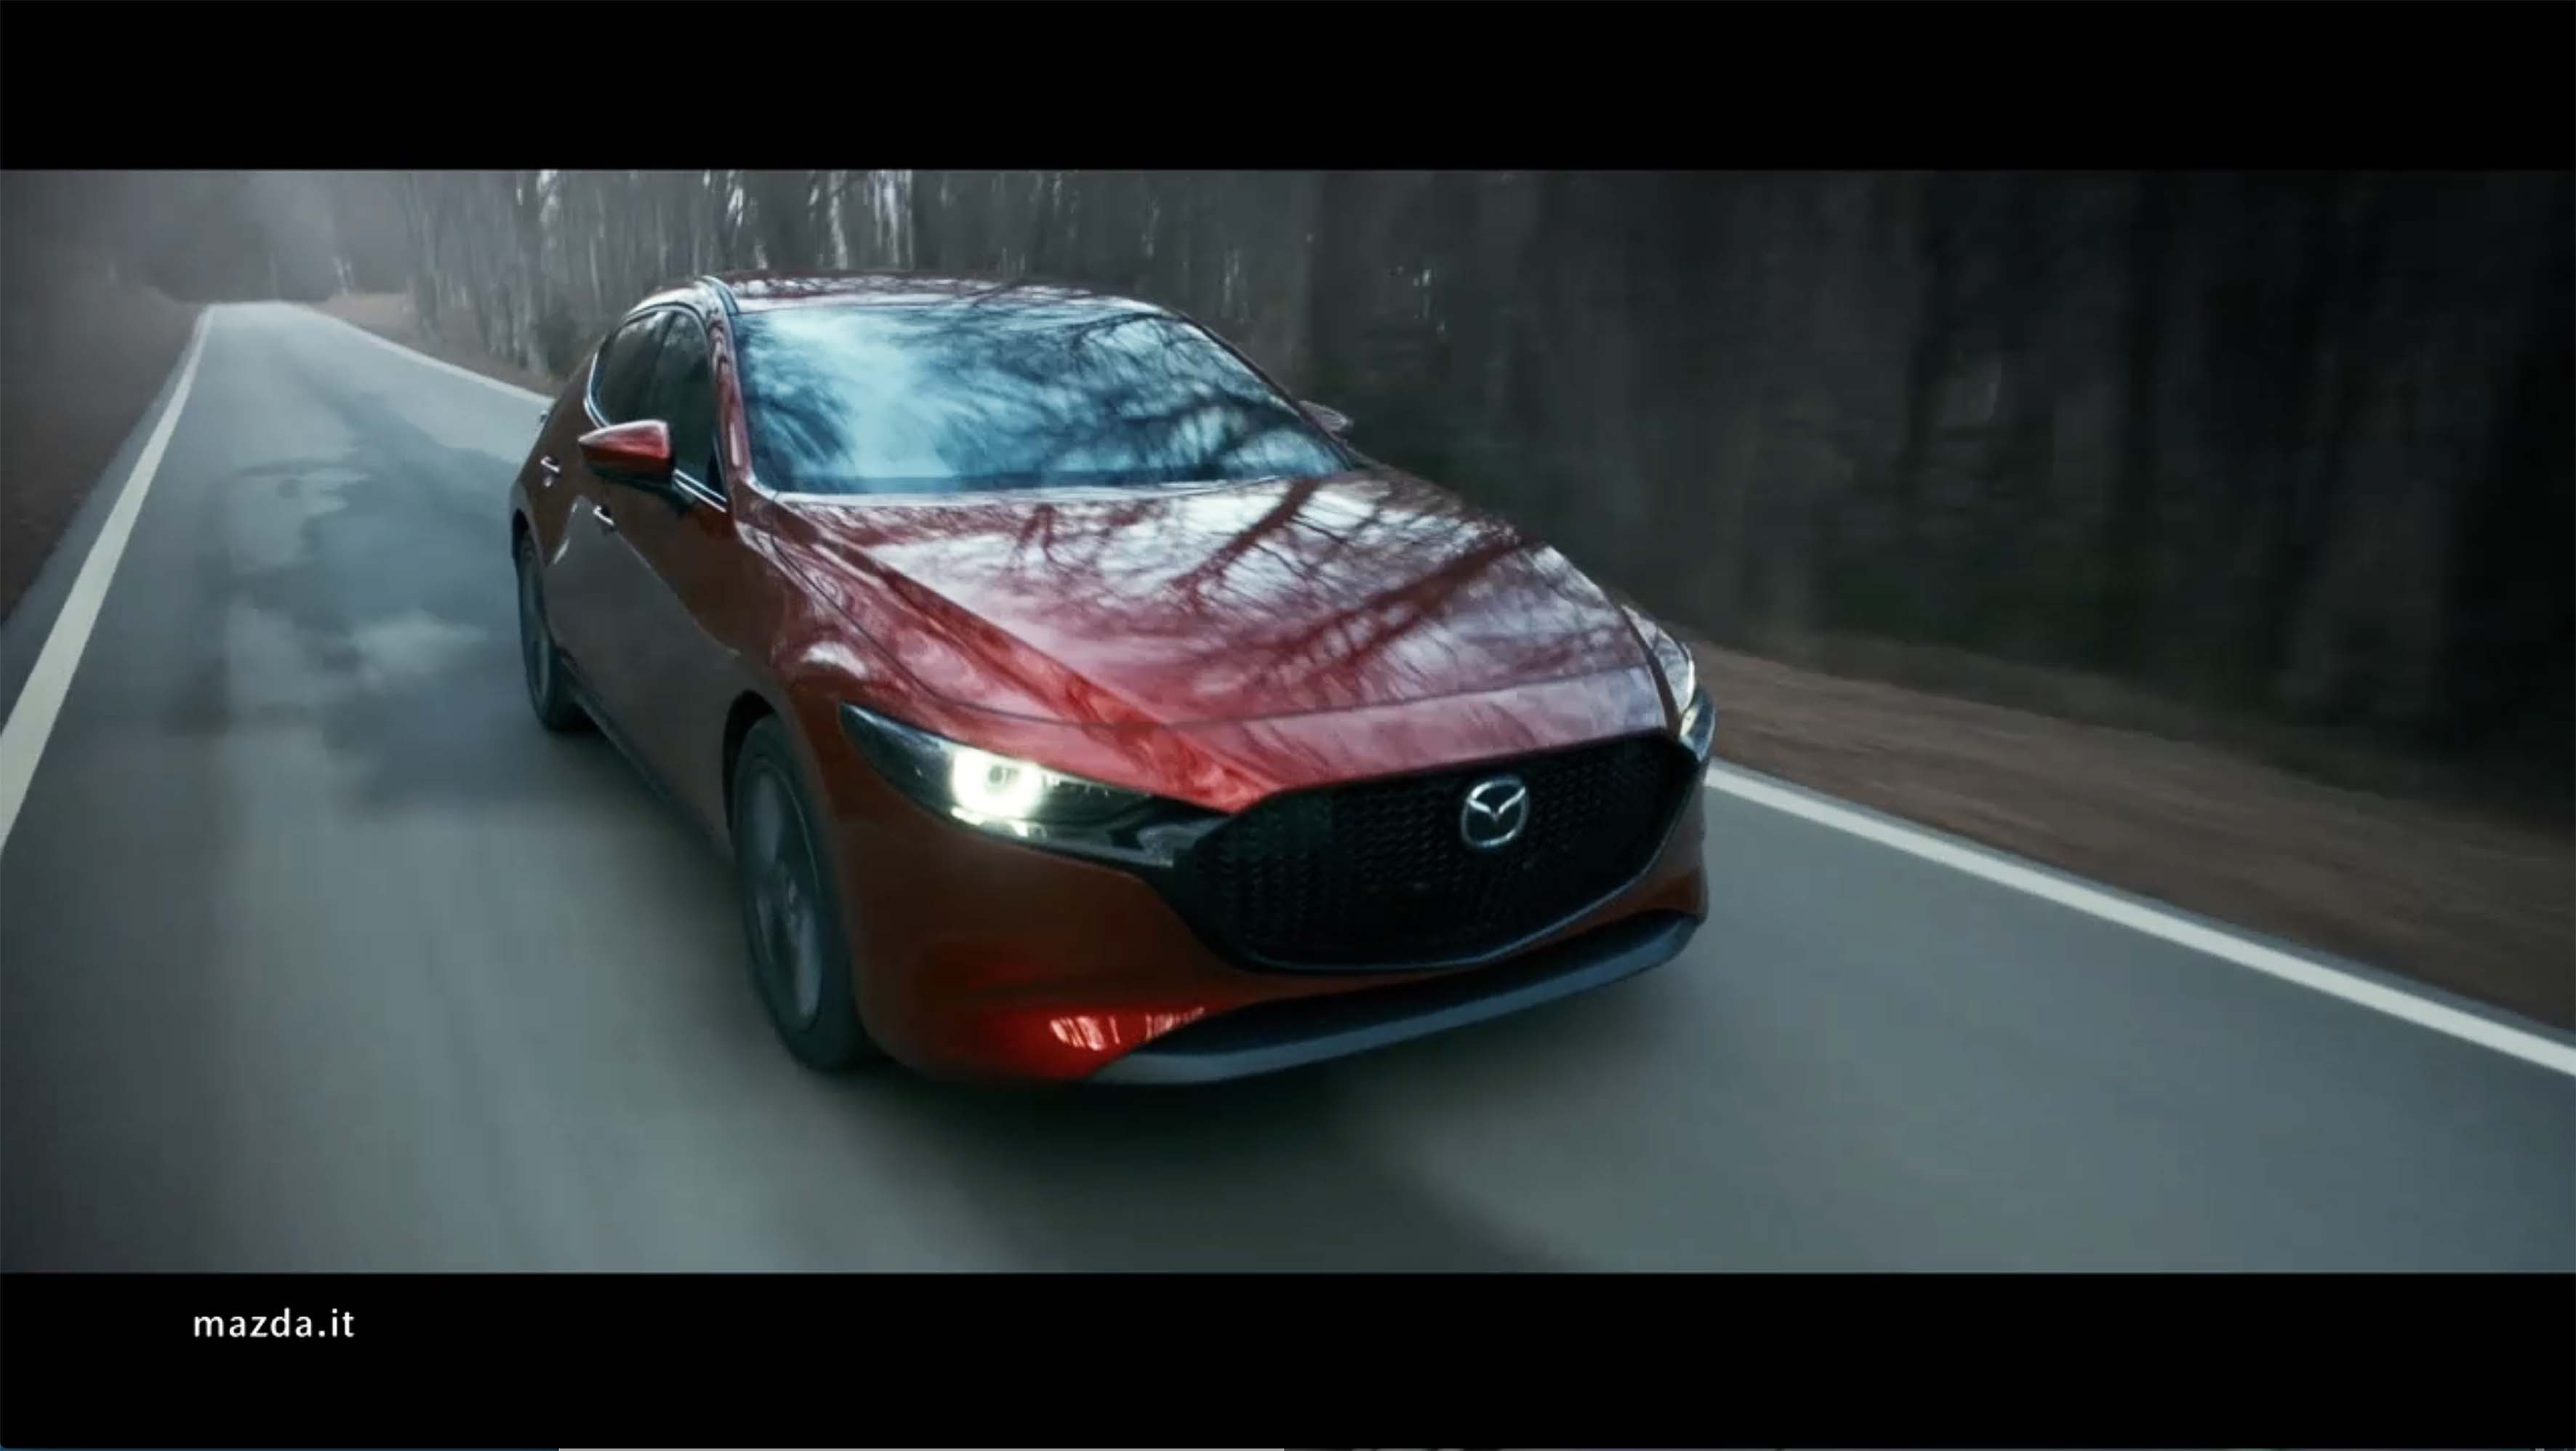 Cosmo Italia lancia la nuova Mazda3 in televisione, al cinema, sul web e in radio